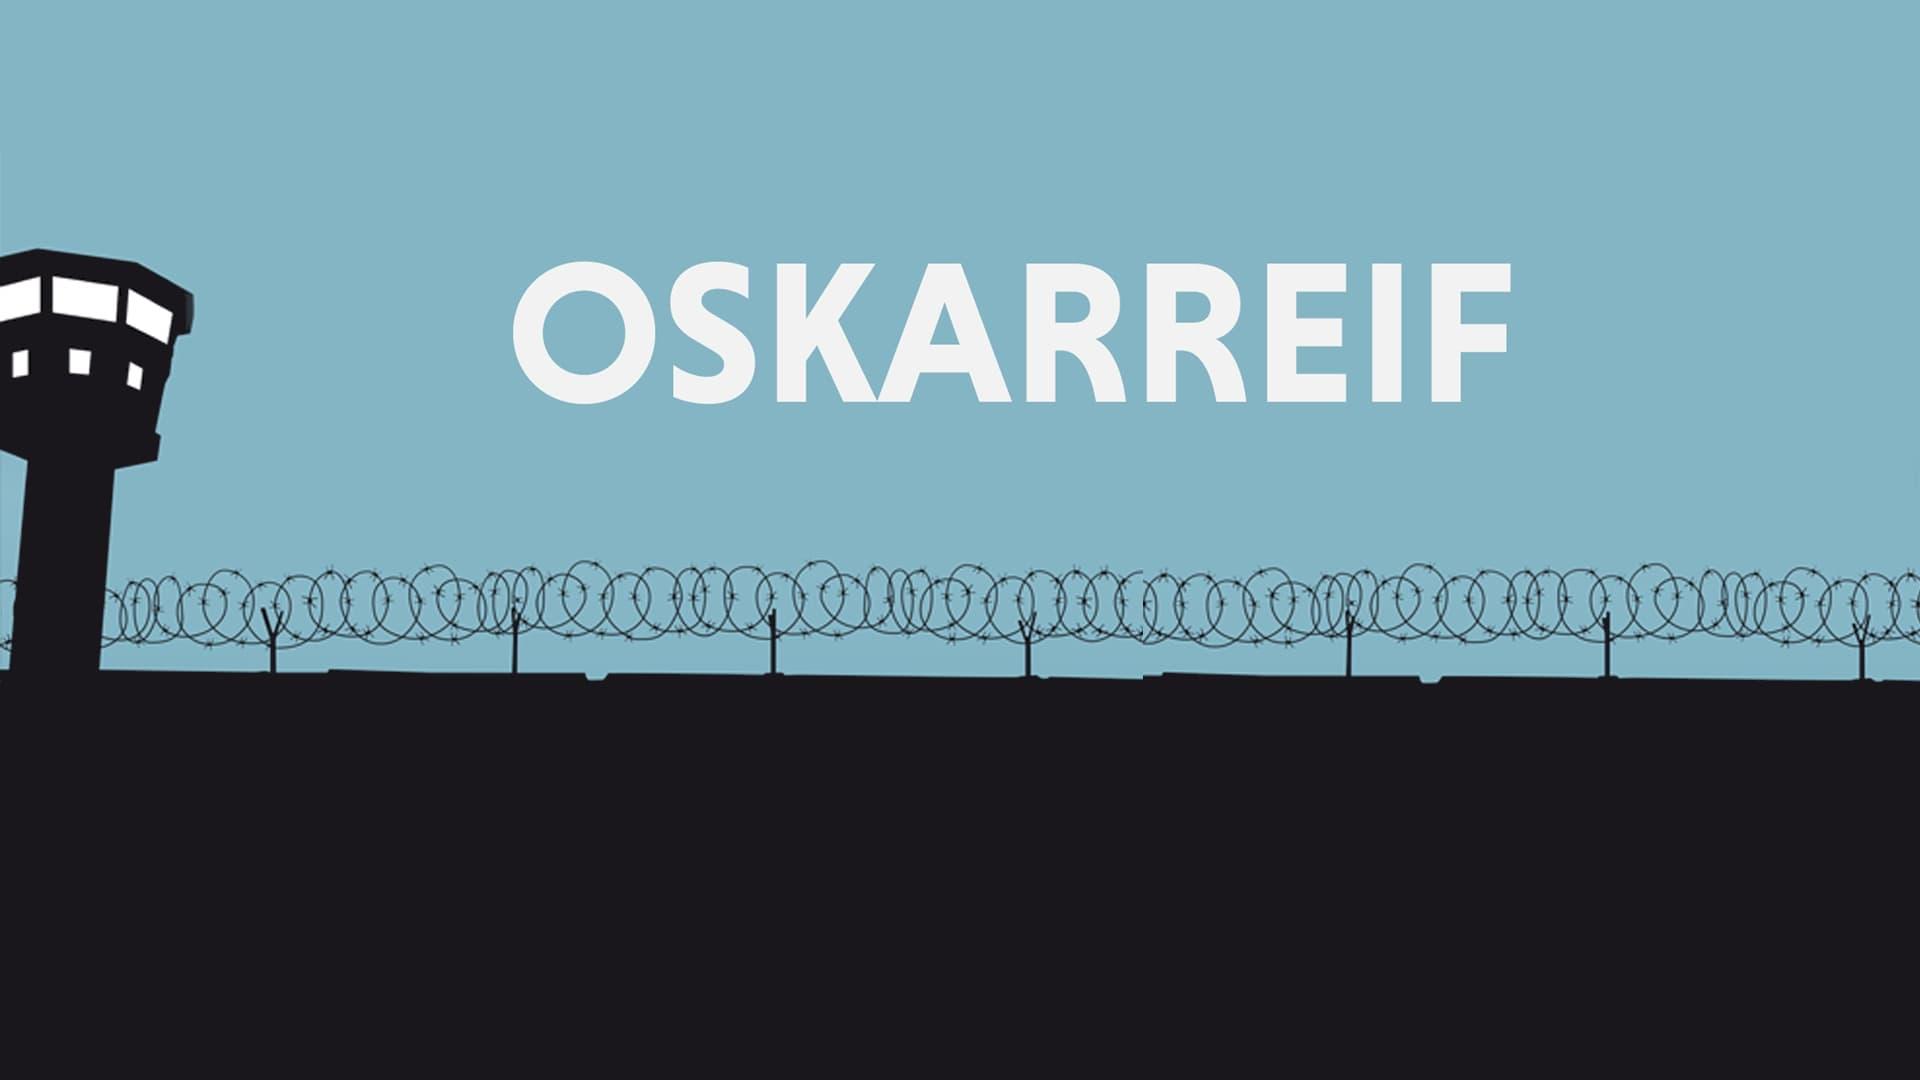 Oskarreif backdrop